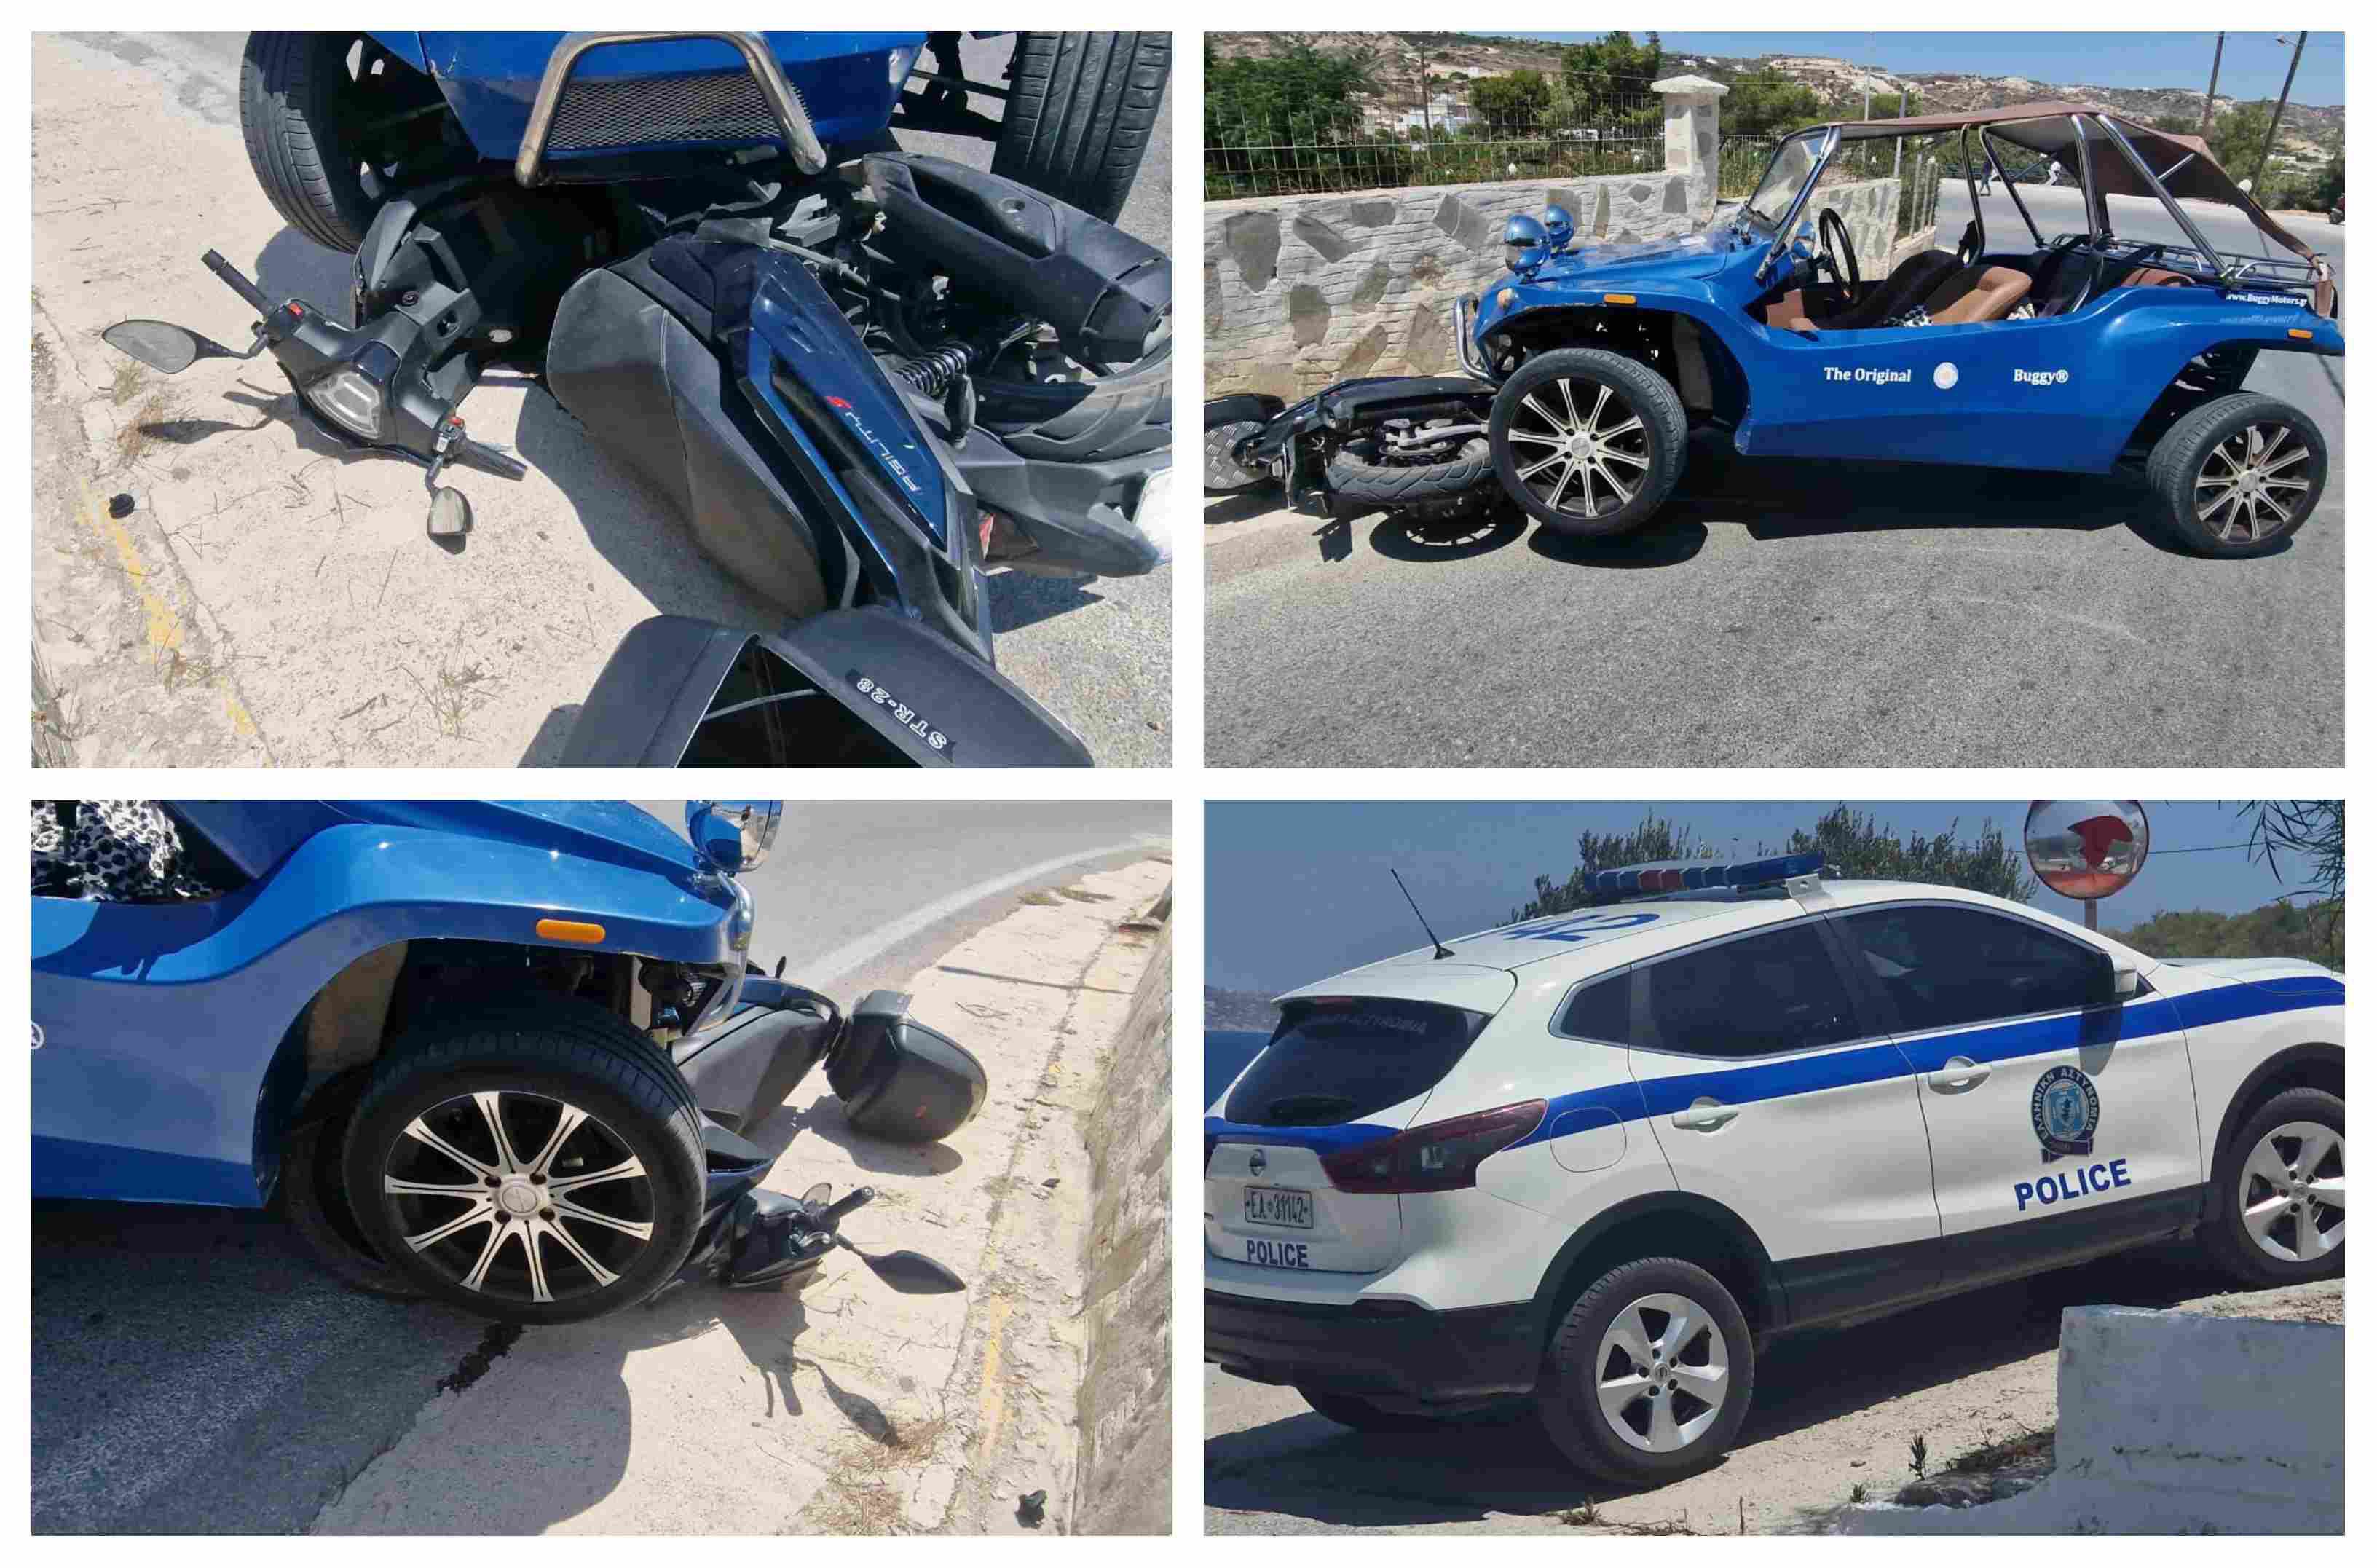 Τροχαίο ατύχημα στην Κέφαλο – Buggy συγκρούστηκε με μηχανάκι (στο νοσοκομείο μεταφέρθηκε ο οδηγός)